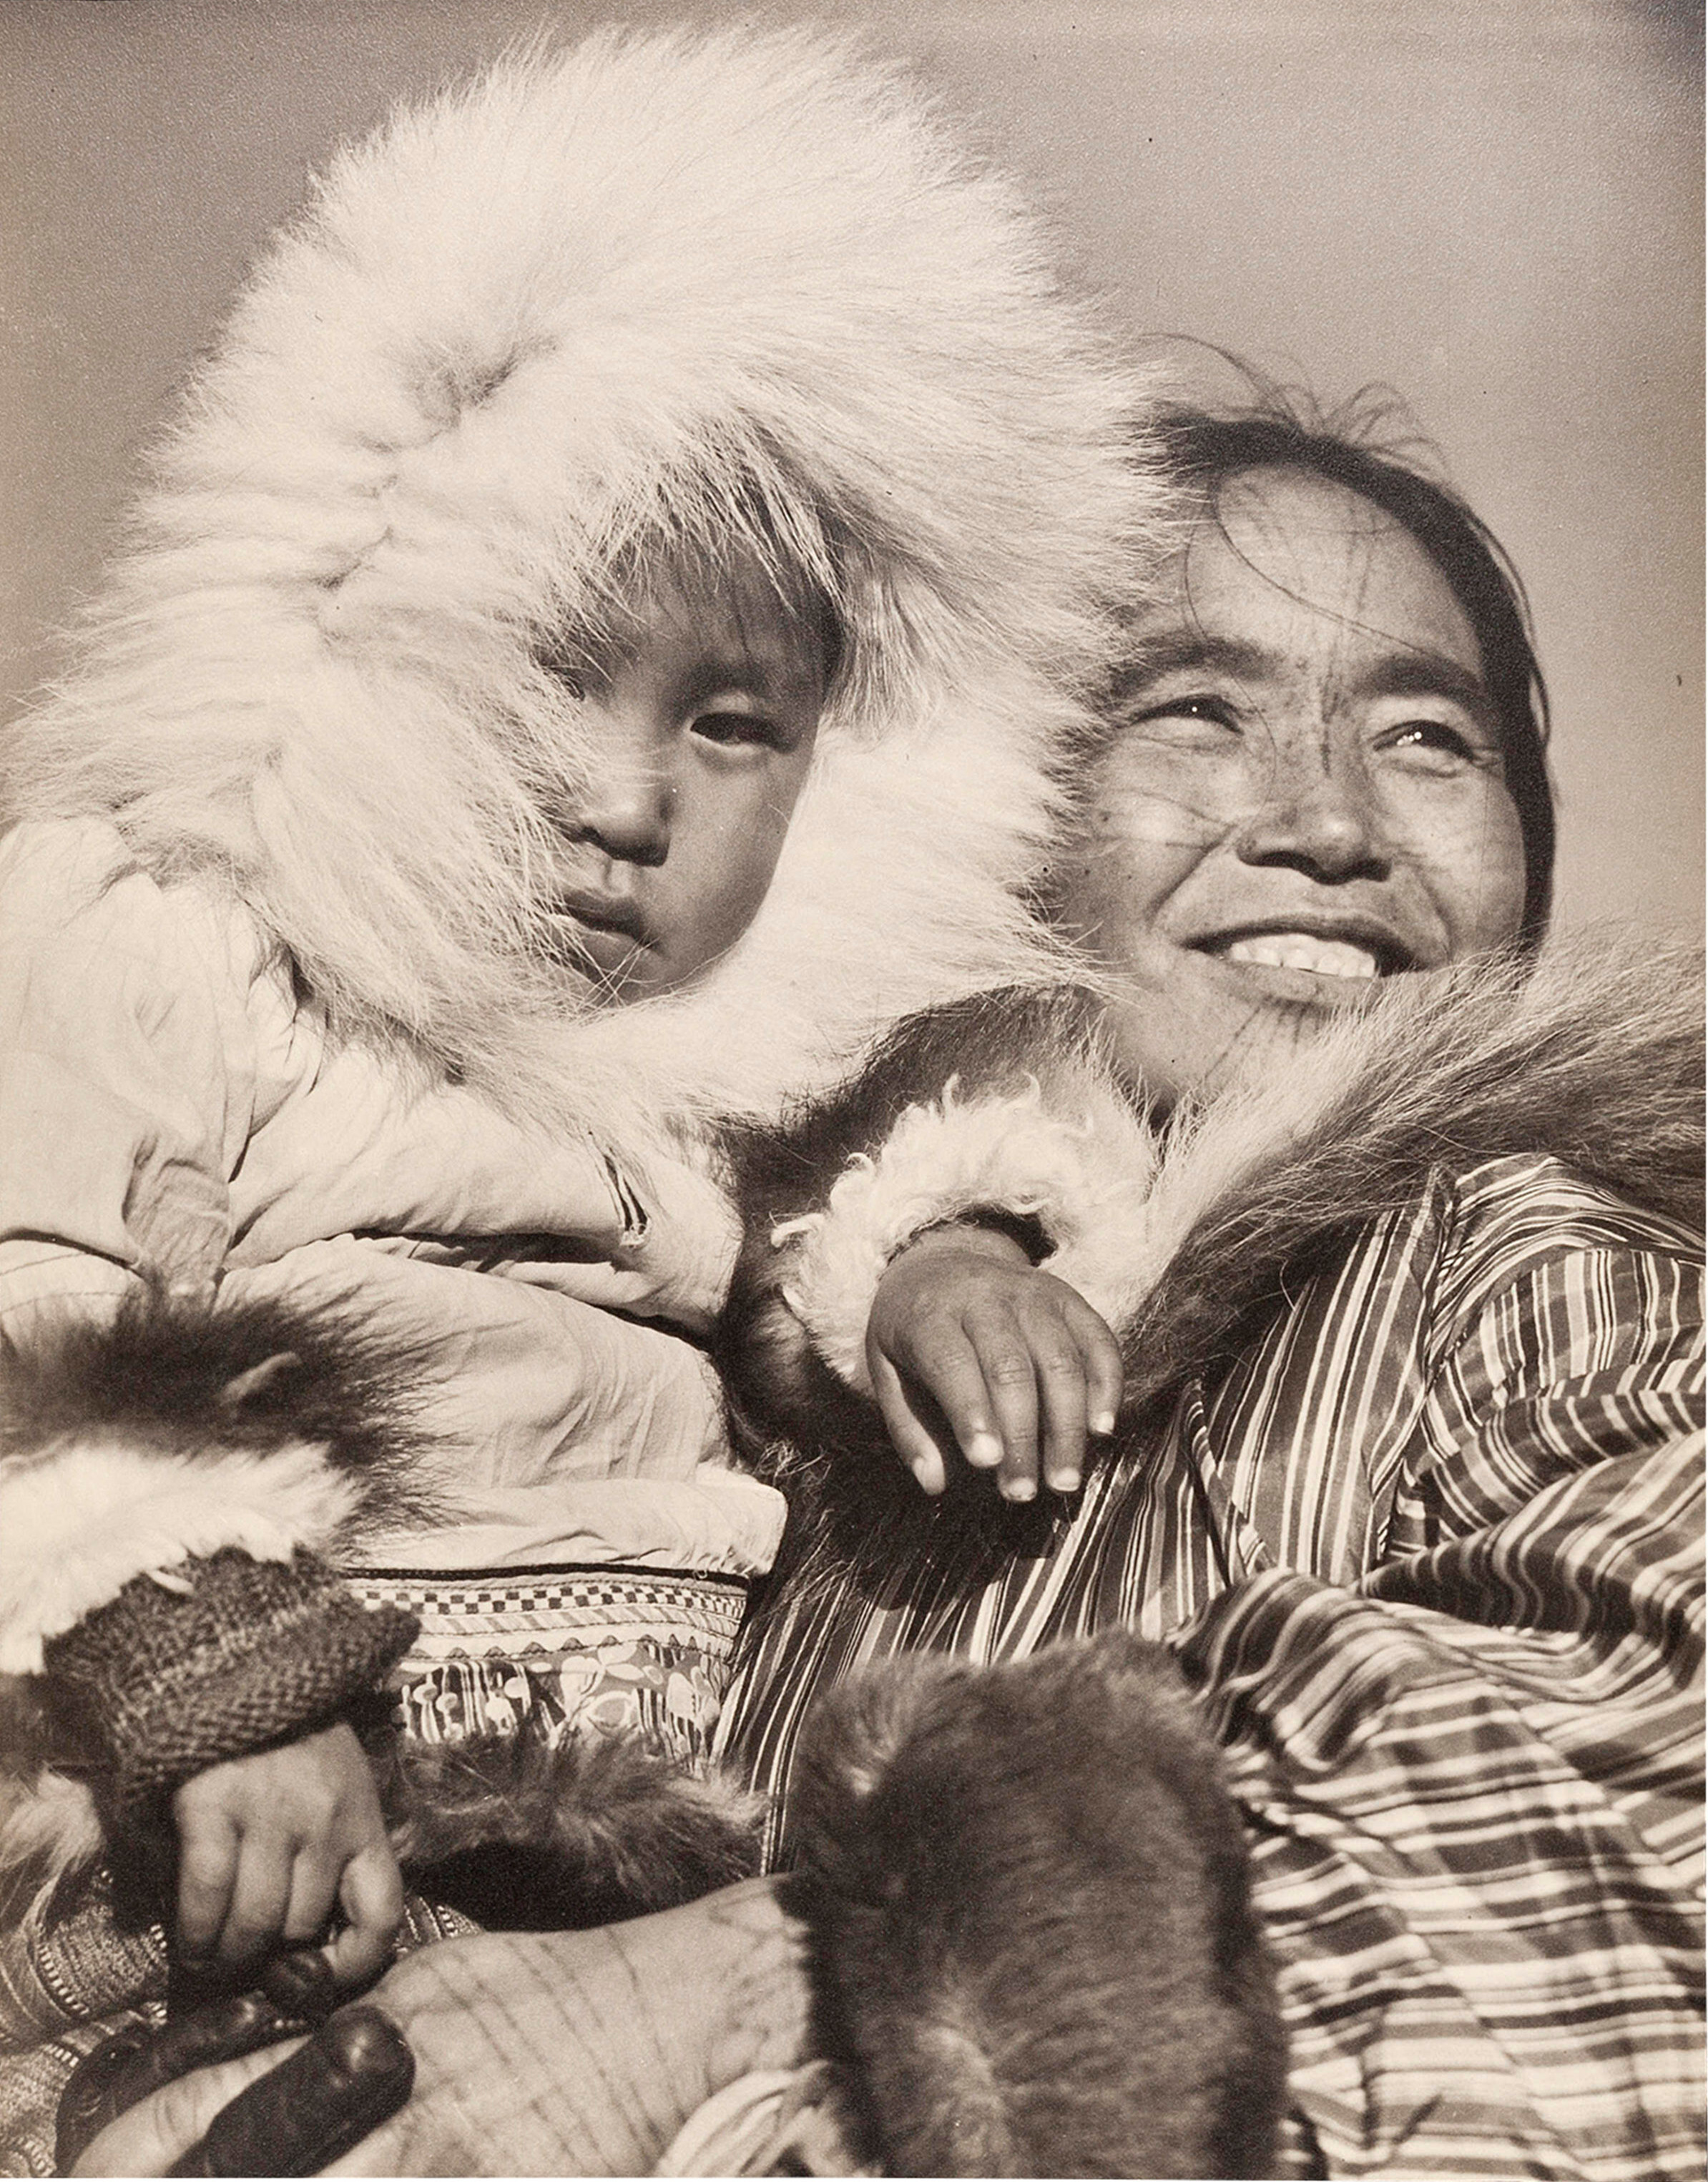 Портреты коренных американцев, Канада, 1937 год.  Фотограф Маргарет Бурк-Уайт